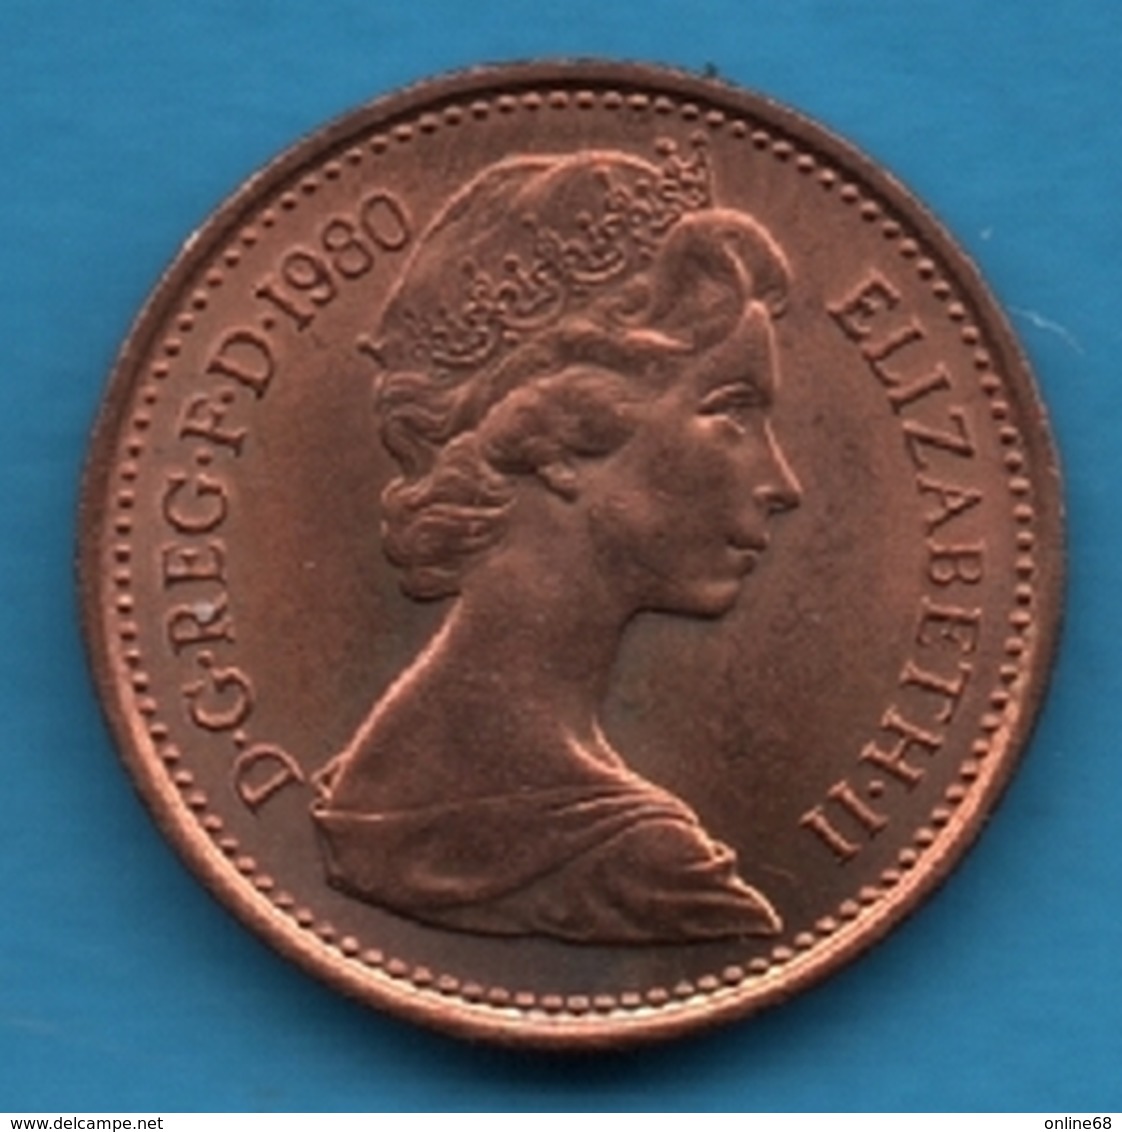 UK 1/2 NEW PENNY 1980 KM# 914 - 1/2 Penny & 1/2 New Penny